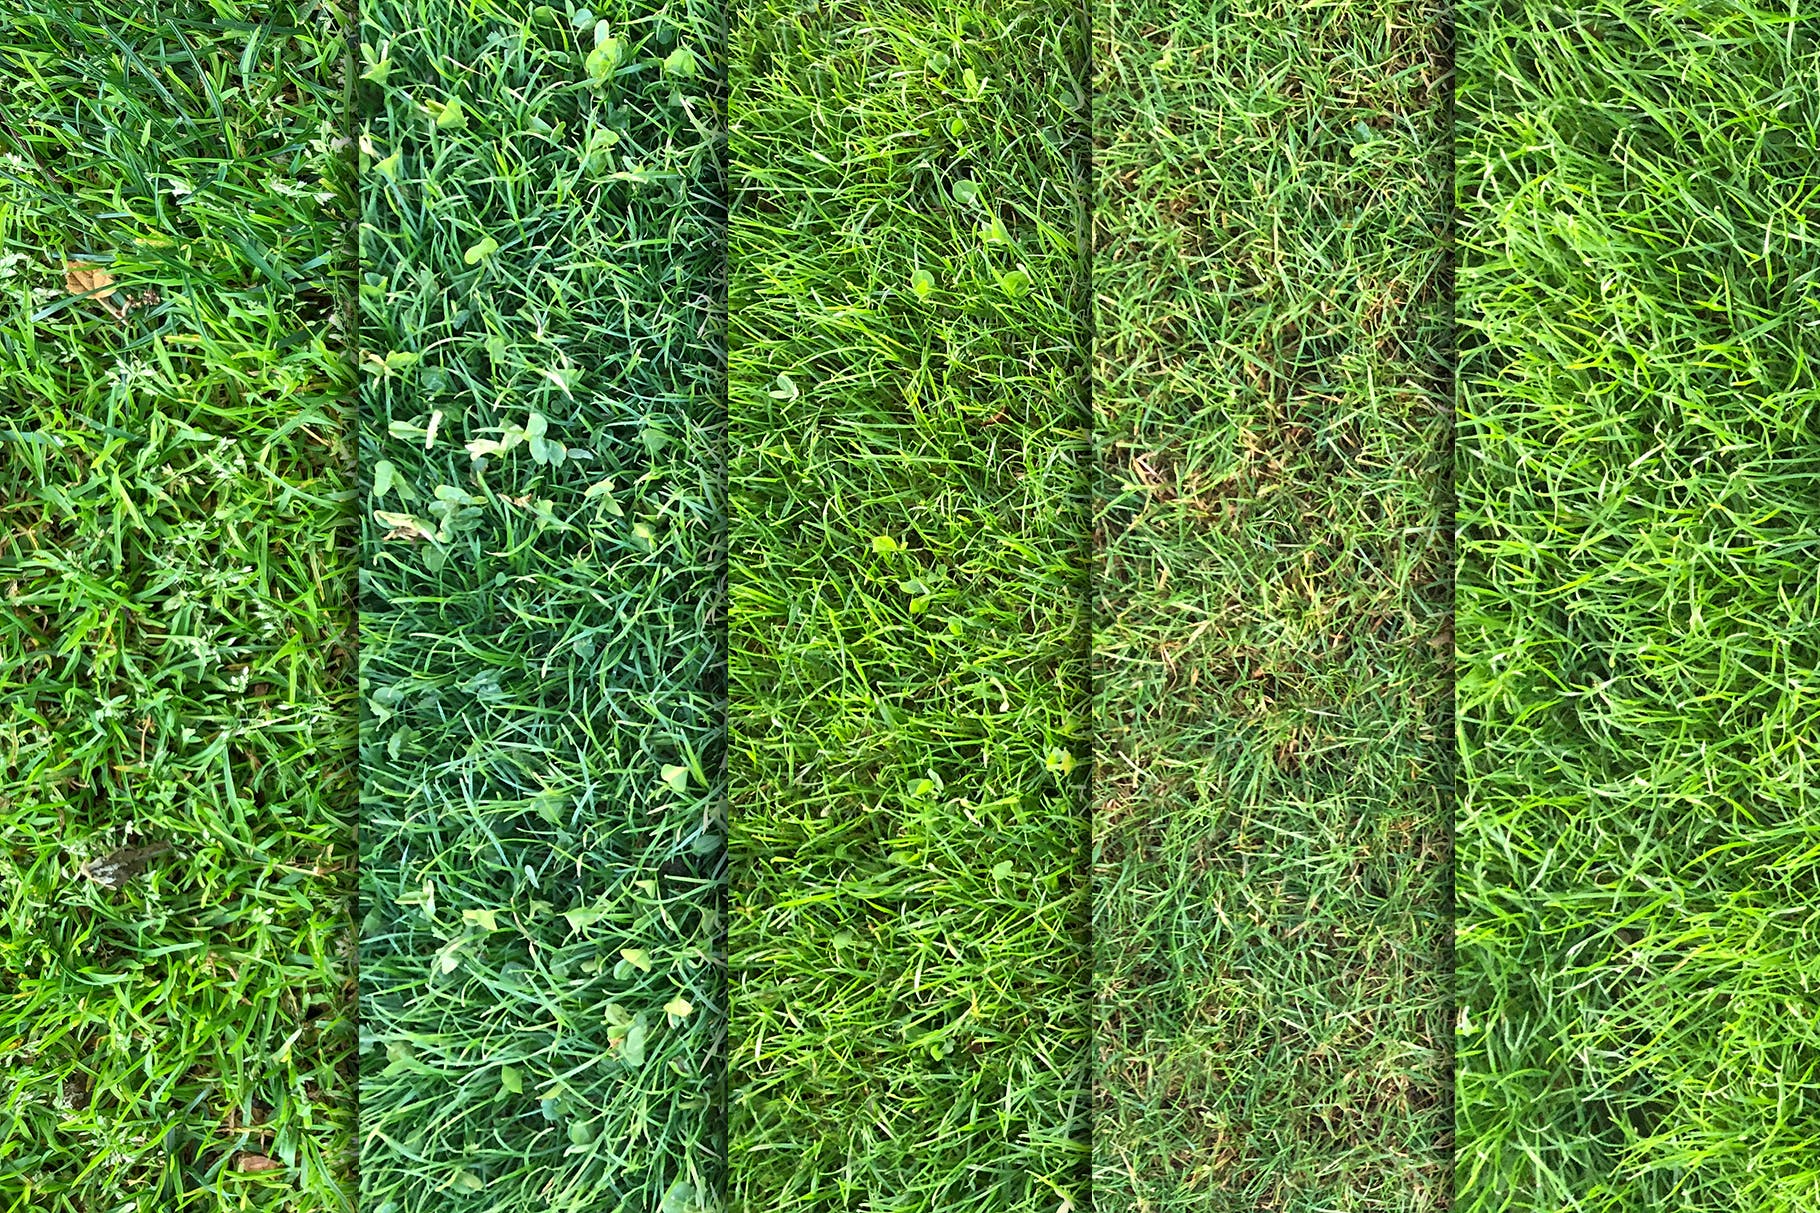 10张高清绿茵草坪照片背景素材v3 Grass Textures x10 Vol 3插图(2)